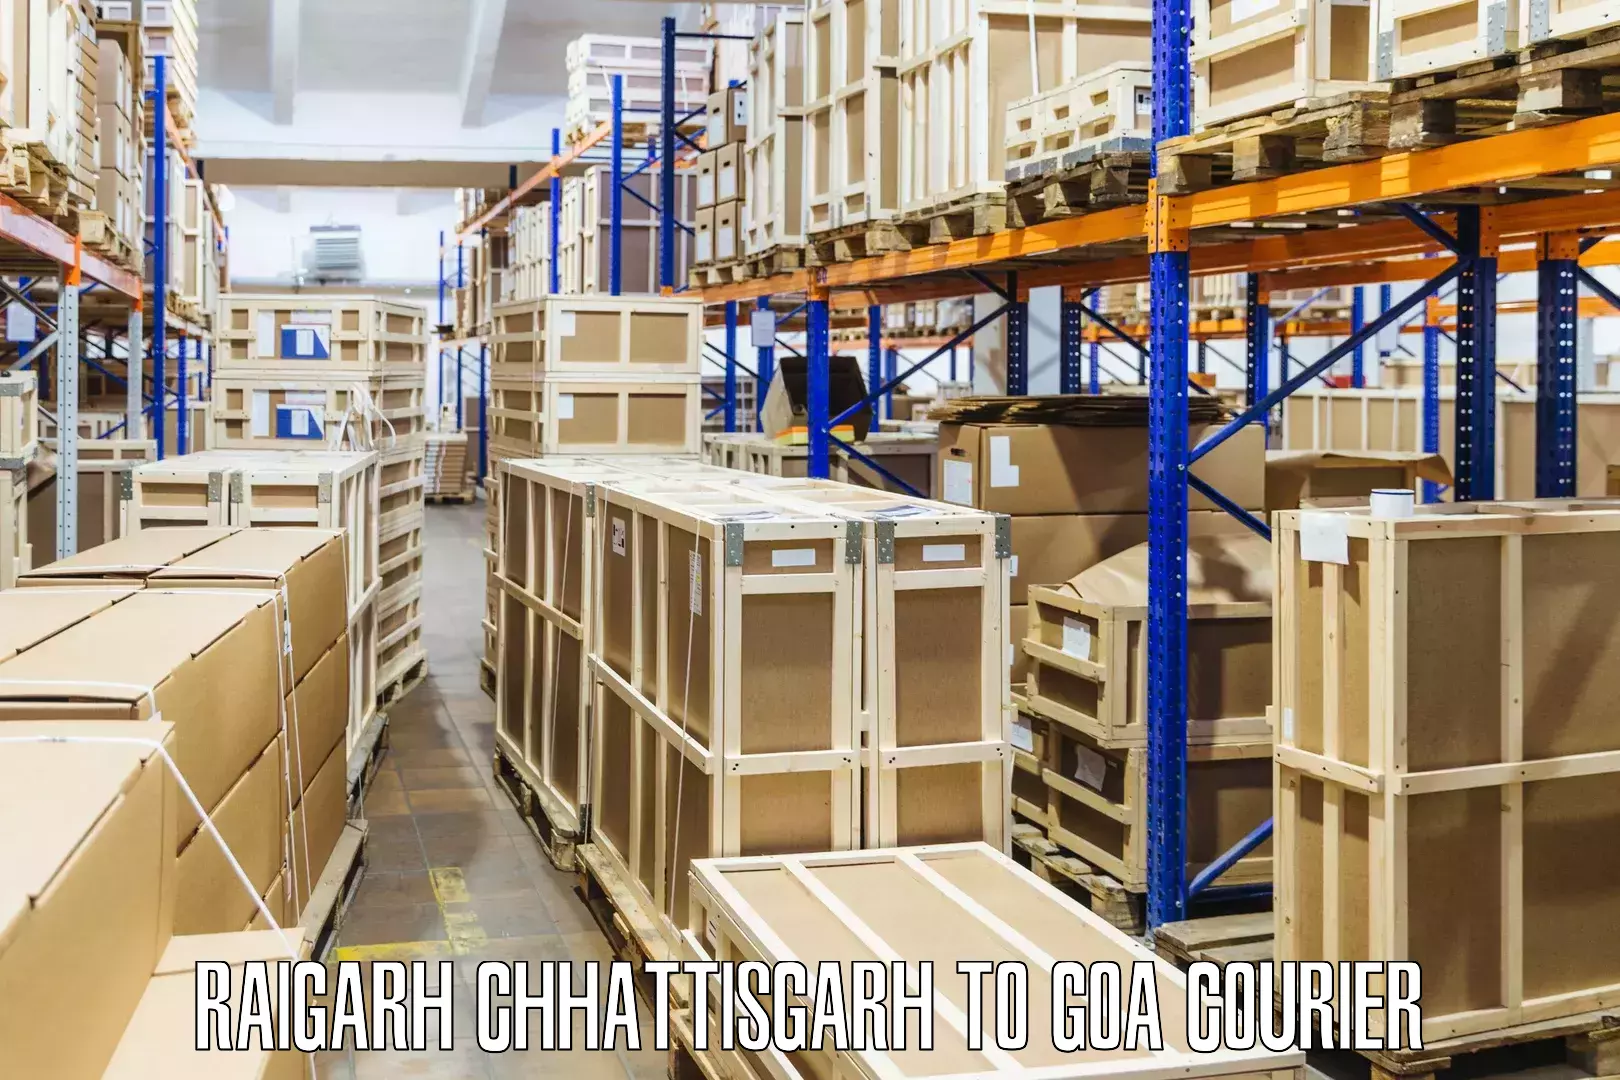 Local delivery service Raigarh Chhattisgarh to Goa